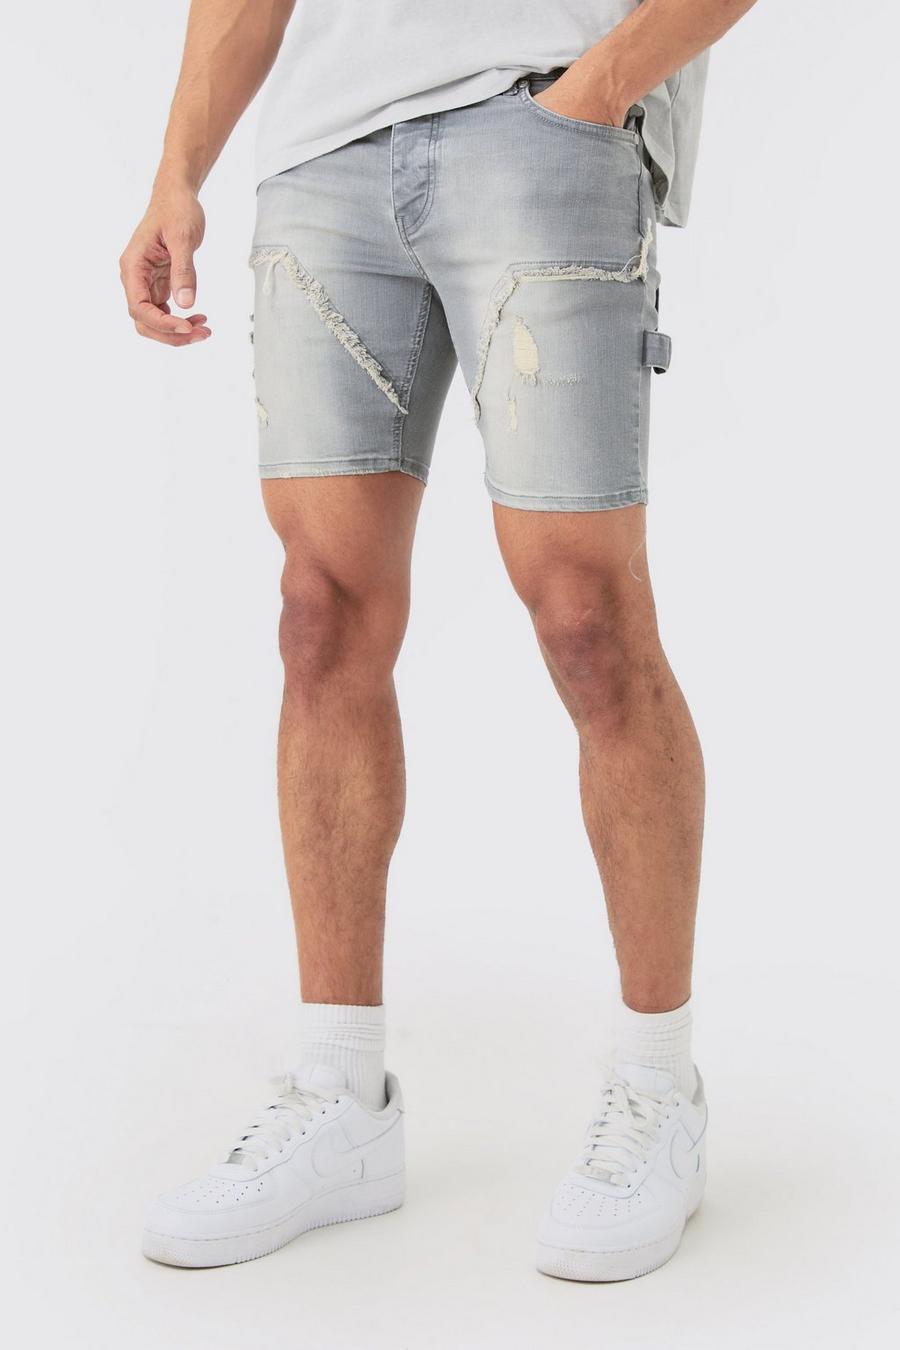 Pantalones cortos vaqueros pitillo elásticos rotos estilo carpintero en gris antiguo, Grey image number 1